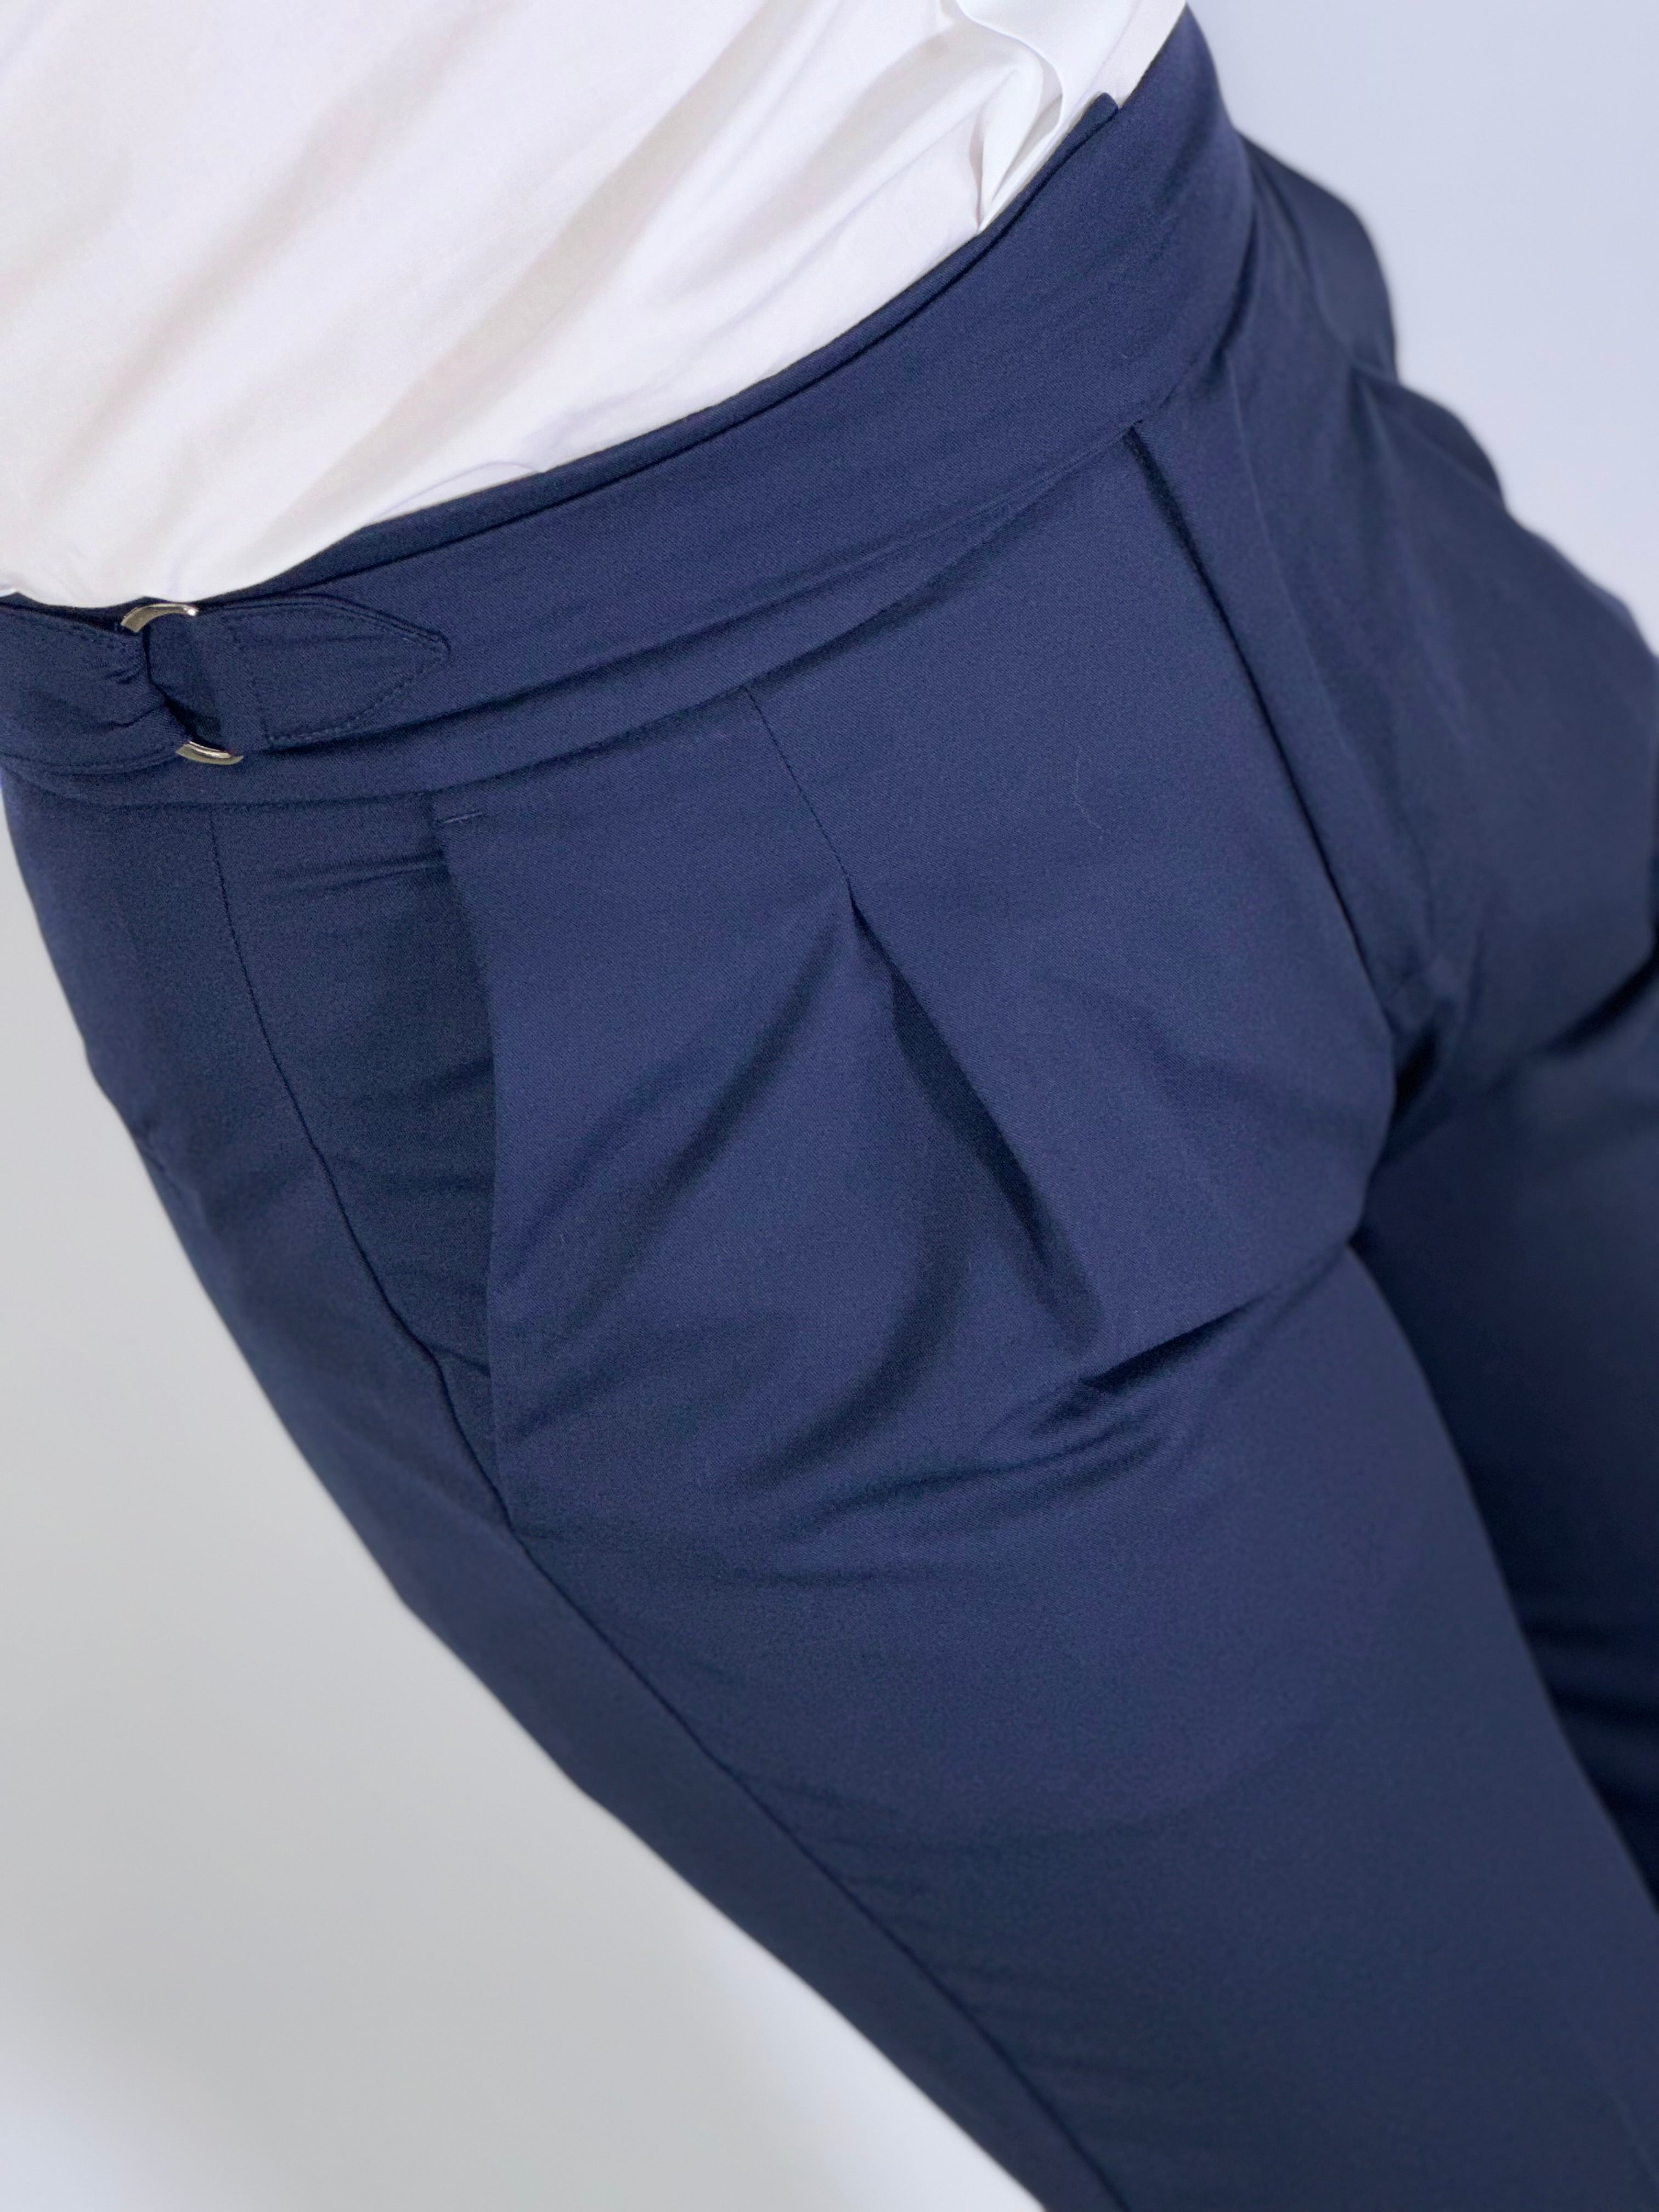 Pantalone vita alta blu UM736